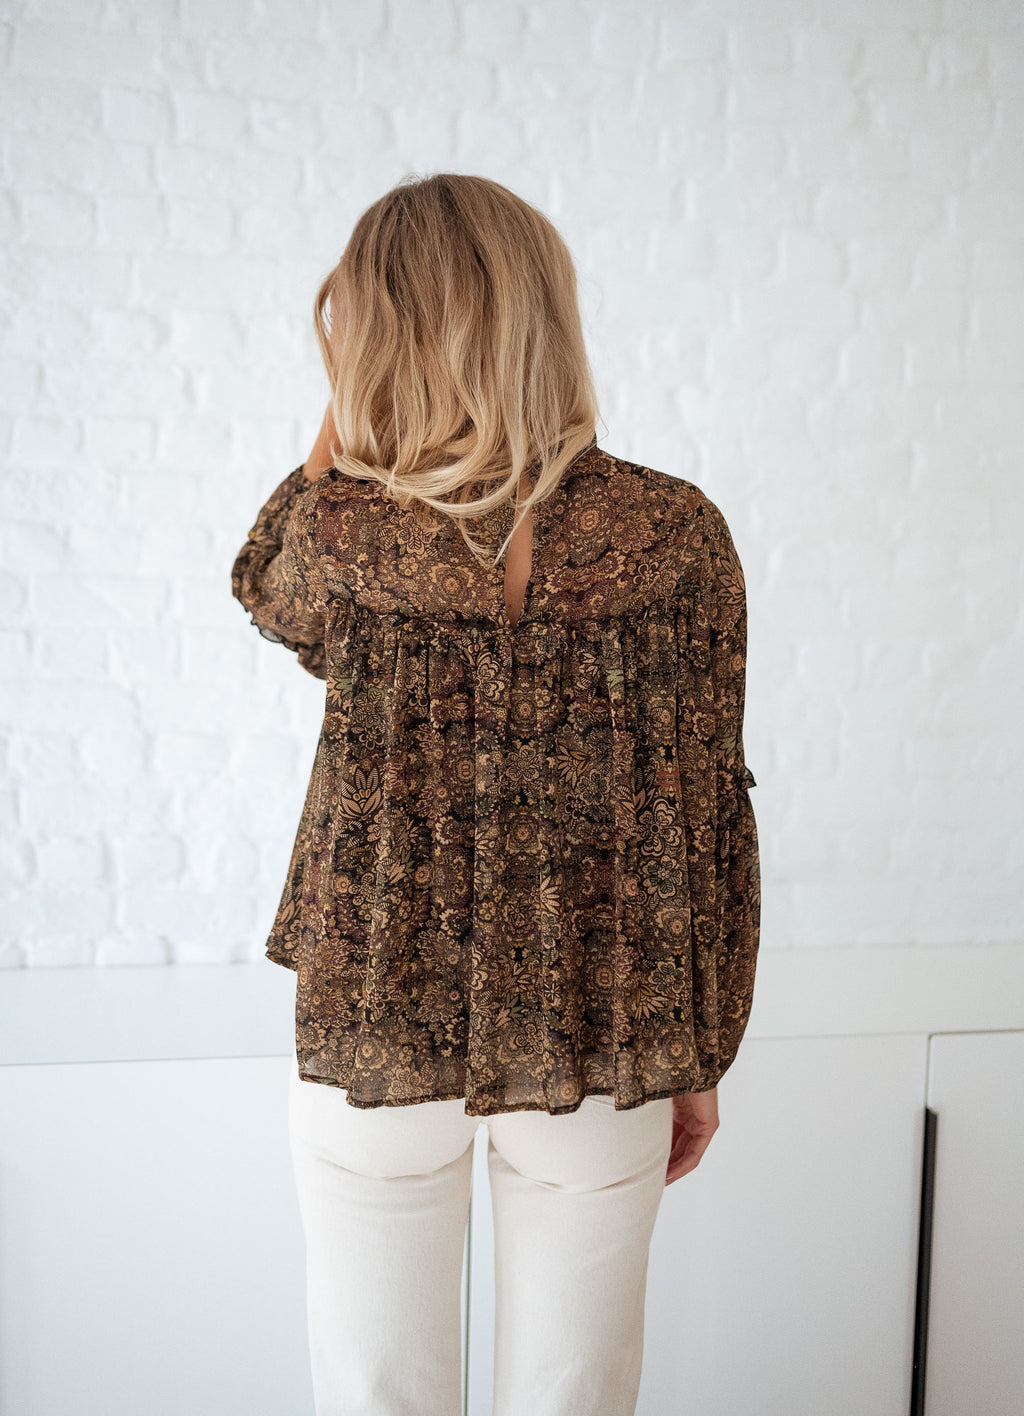 Luzy blouse - floral